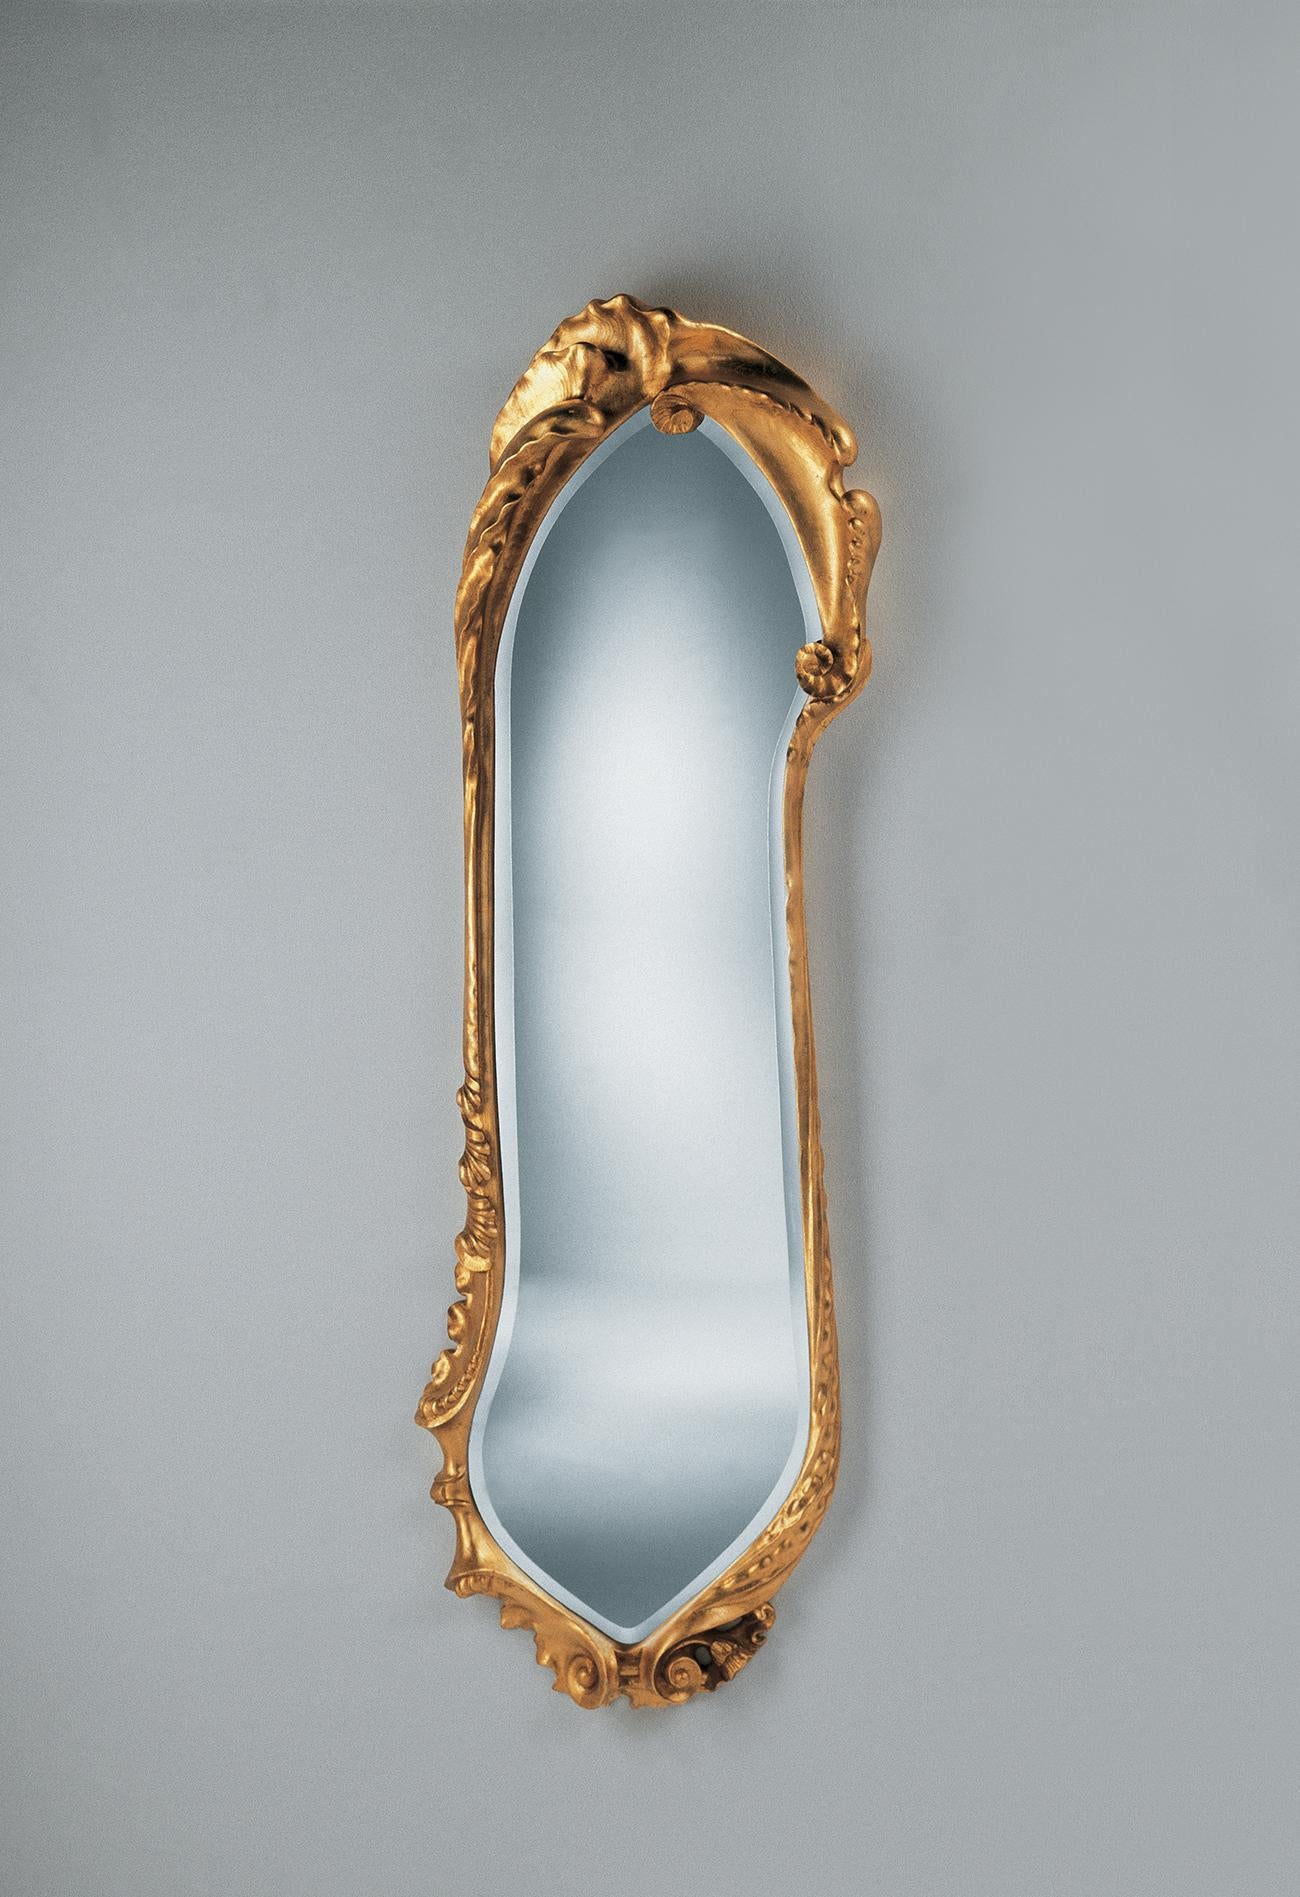 Goldener Calvet-Spiegel, Antonio Gaudí
1902
Abmessungen: 58 cm x H 195 cm
MATERIALIEN: Massive Eiche, lackiert oder mit feinem Blattgold aus Messing beschichtet


Antoni Gaudí (1852/1926) ist zweifelsohne der international bekannteste